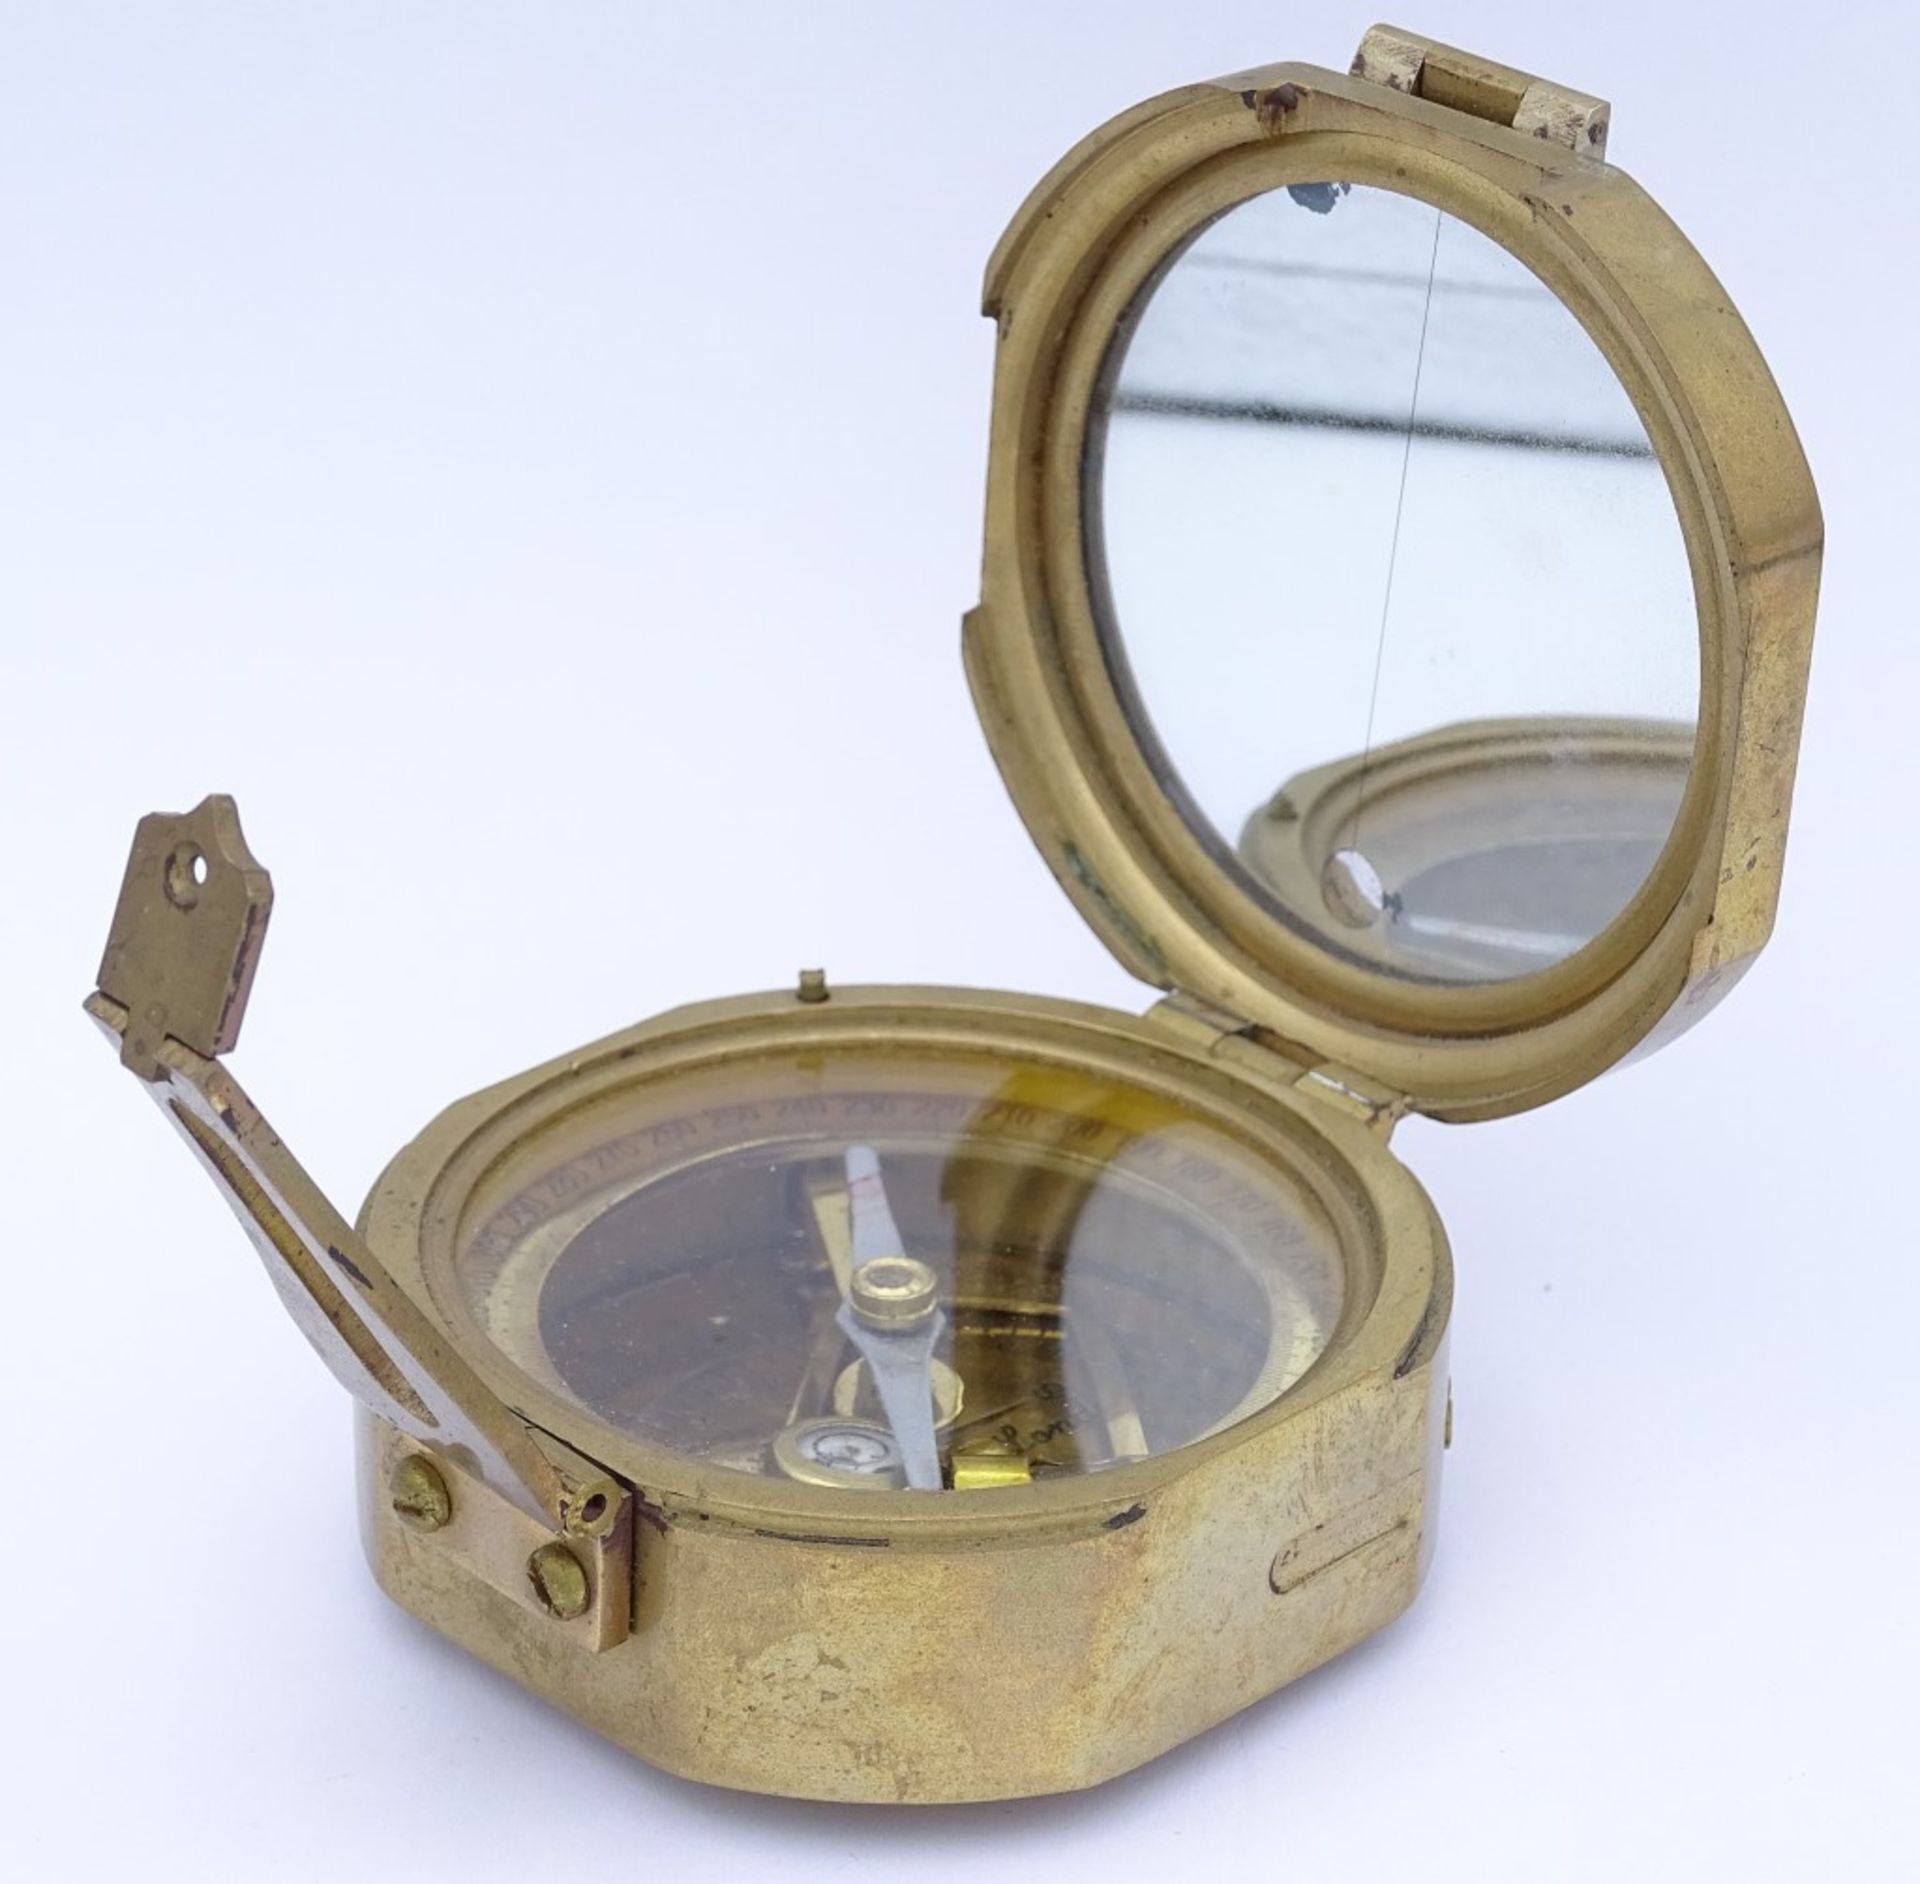 Kl.Kompass "Stanley London" Messinggehäuse mit innliegender Wasserwaage,7,0x8,0cm